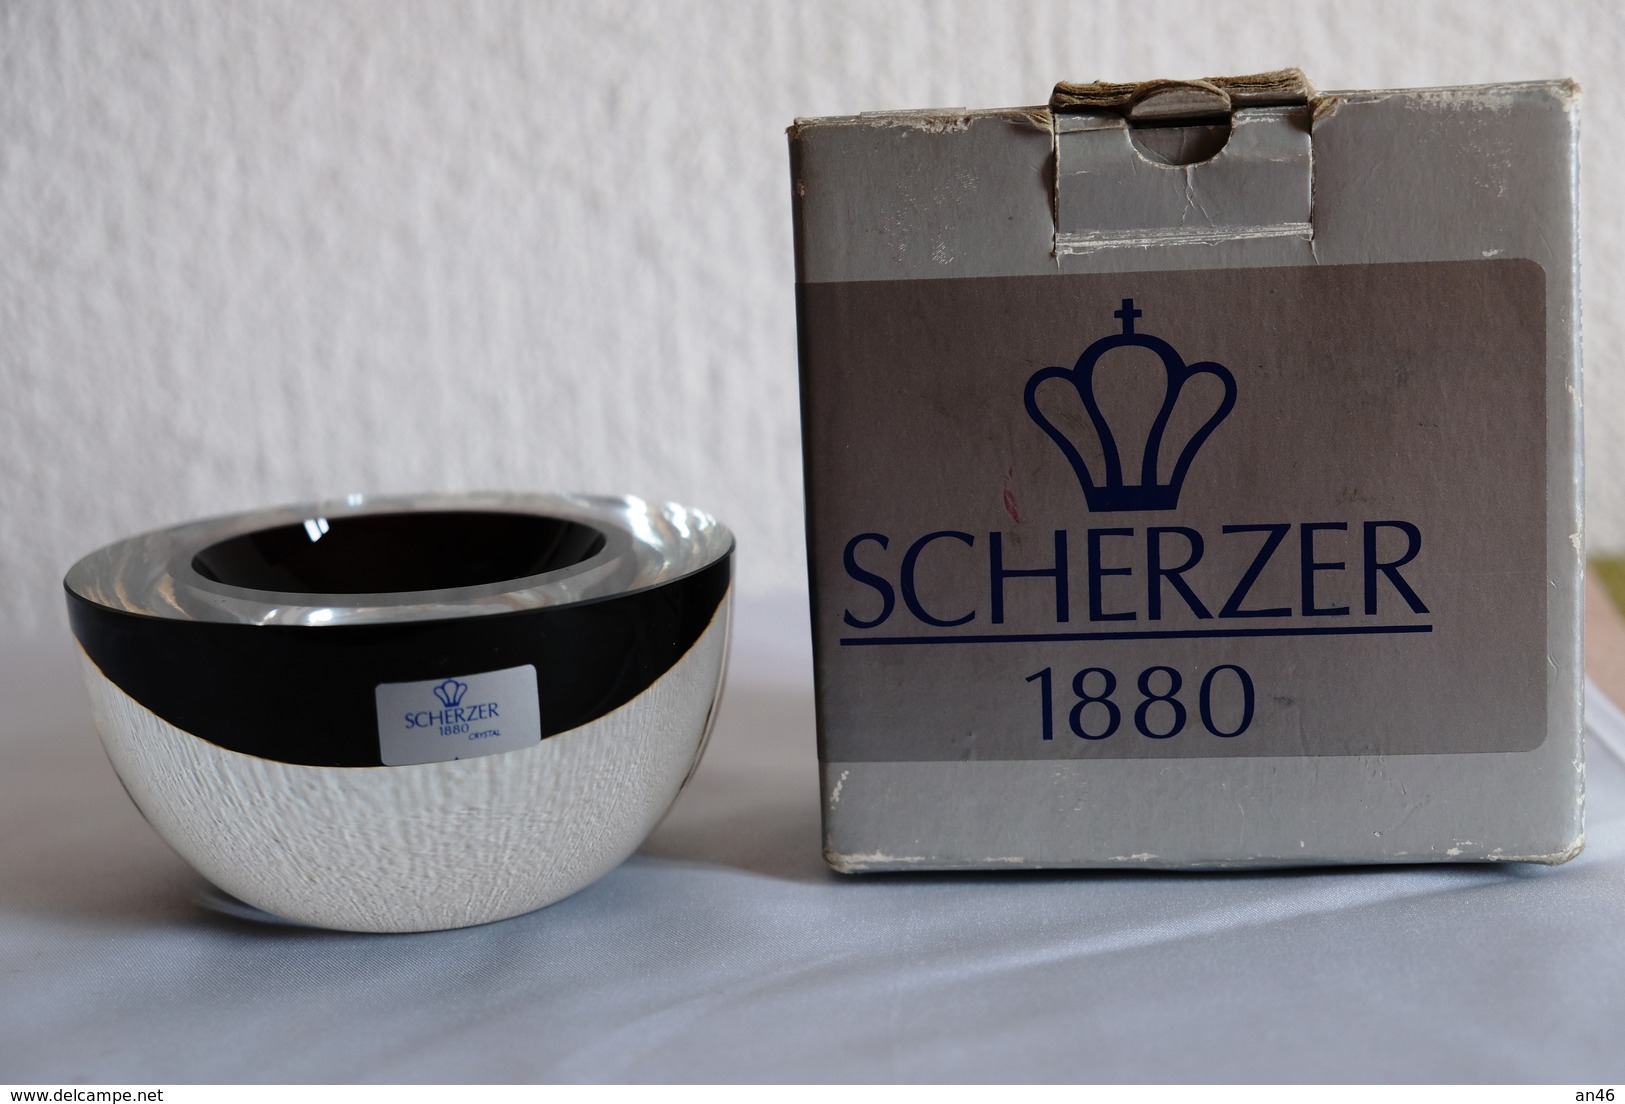 Portasigarette in legno di noce "La Thuile 1918-Portacenere in ametista Scherzer1880-Accendino "Martin Lozy"funzionante